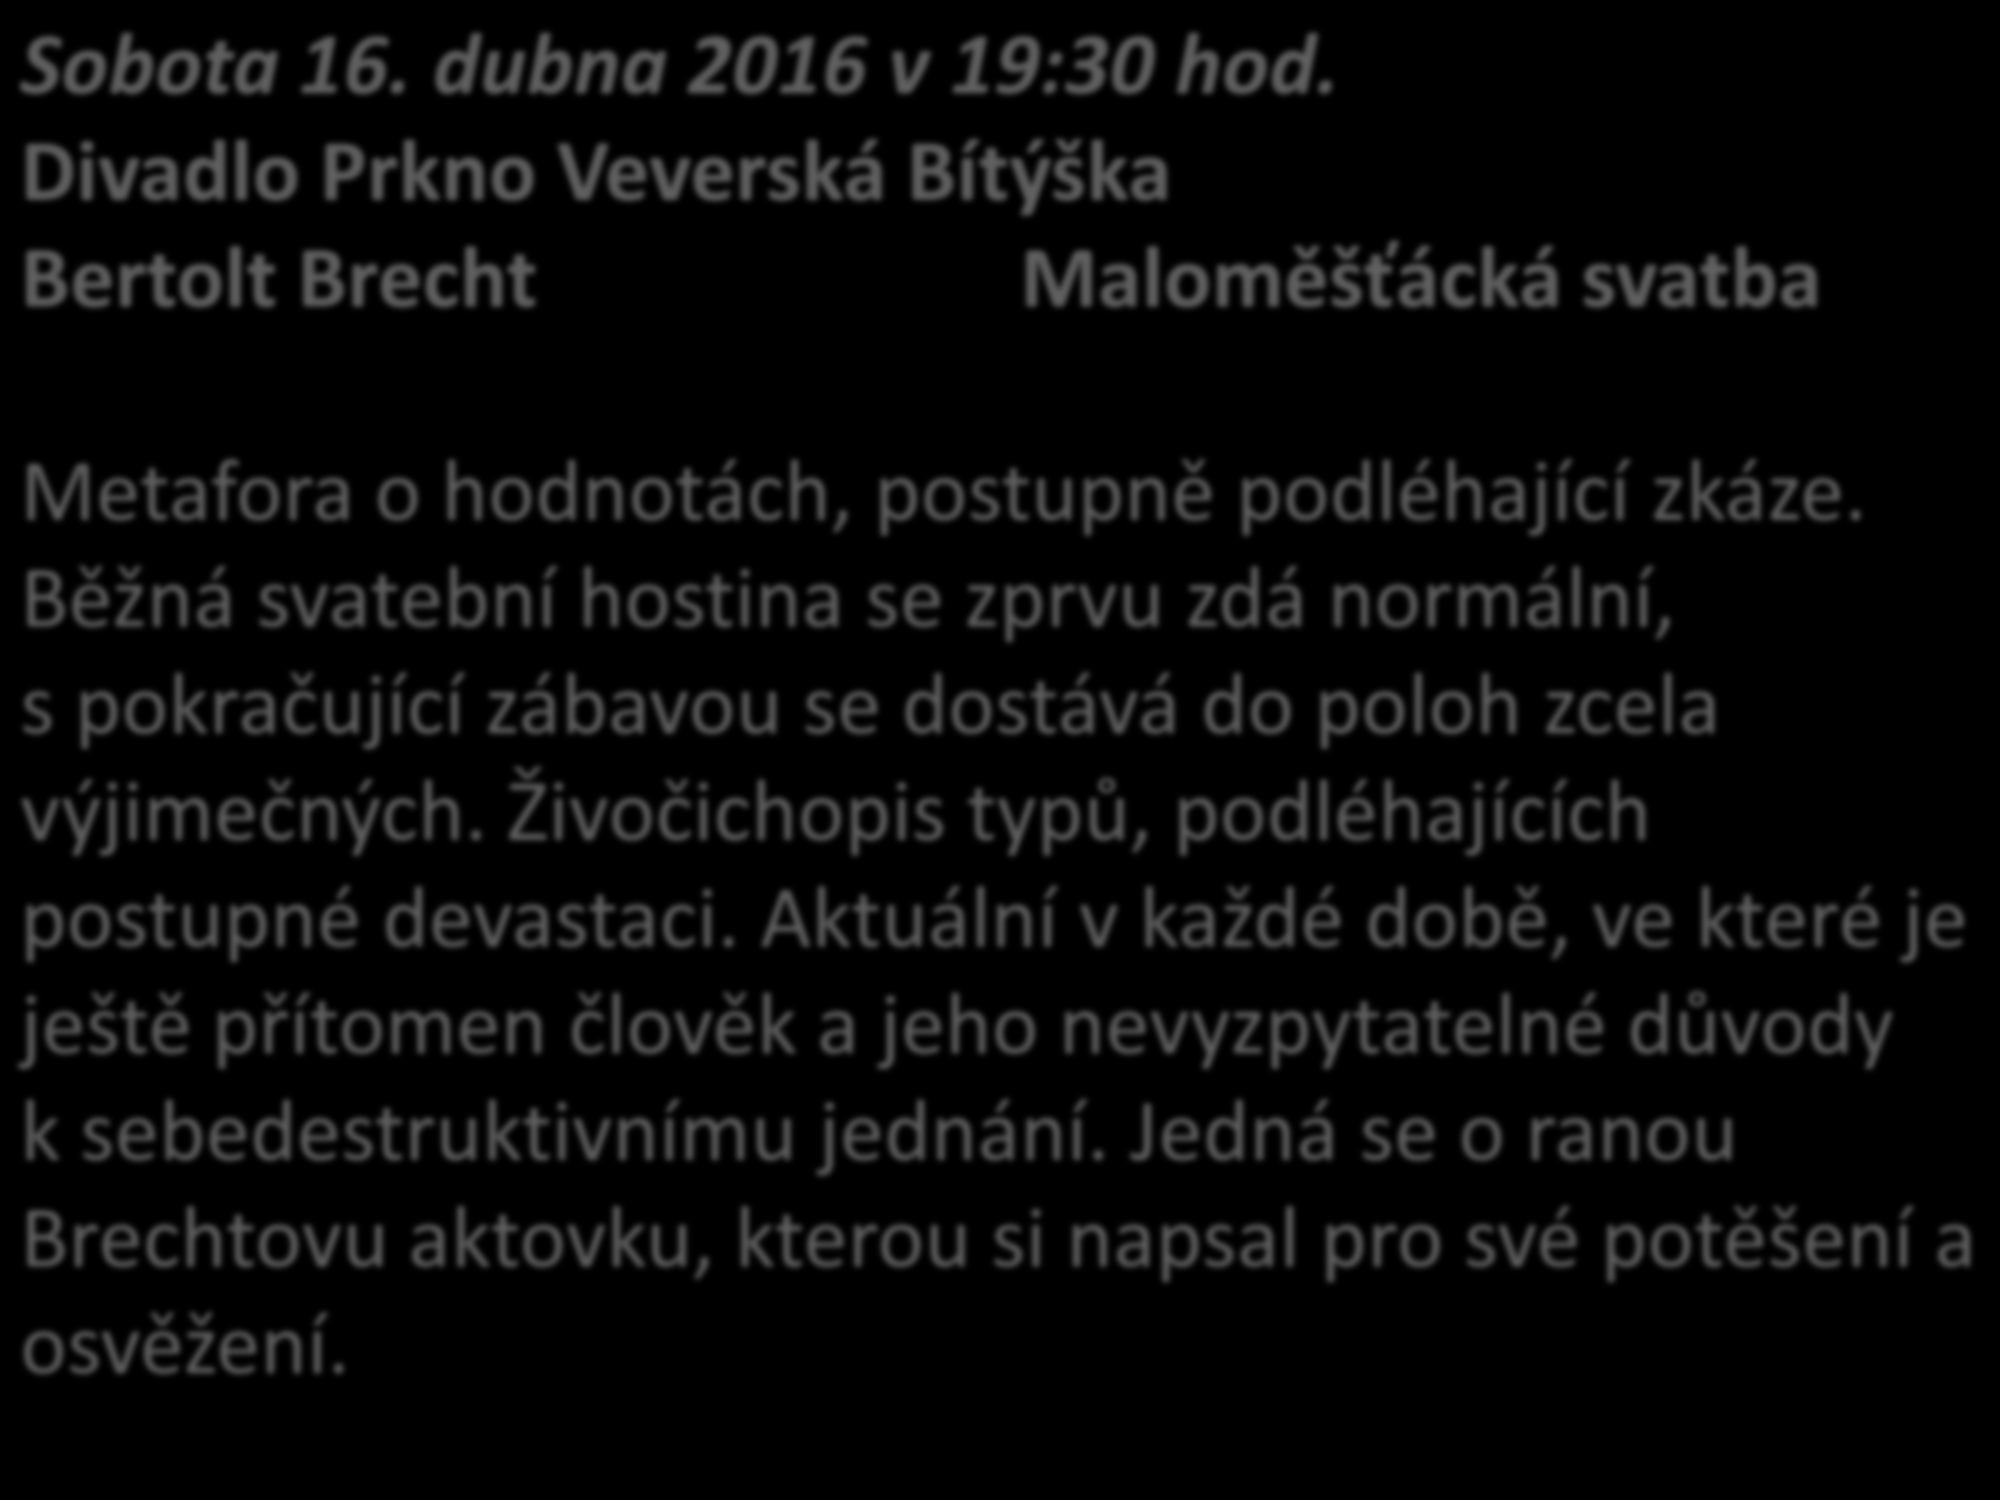 Sobota 16. dubna 2016 v 19:30 hod. Divadlo Prkno Veverská Bítýška Bertolt Brecht Maloměšťácká svatba Metafora o hodnotách, postupně podléhající zkáze.